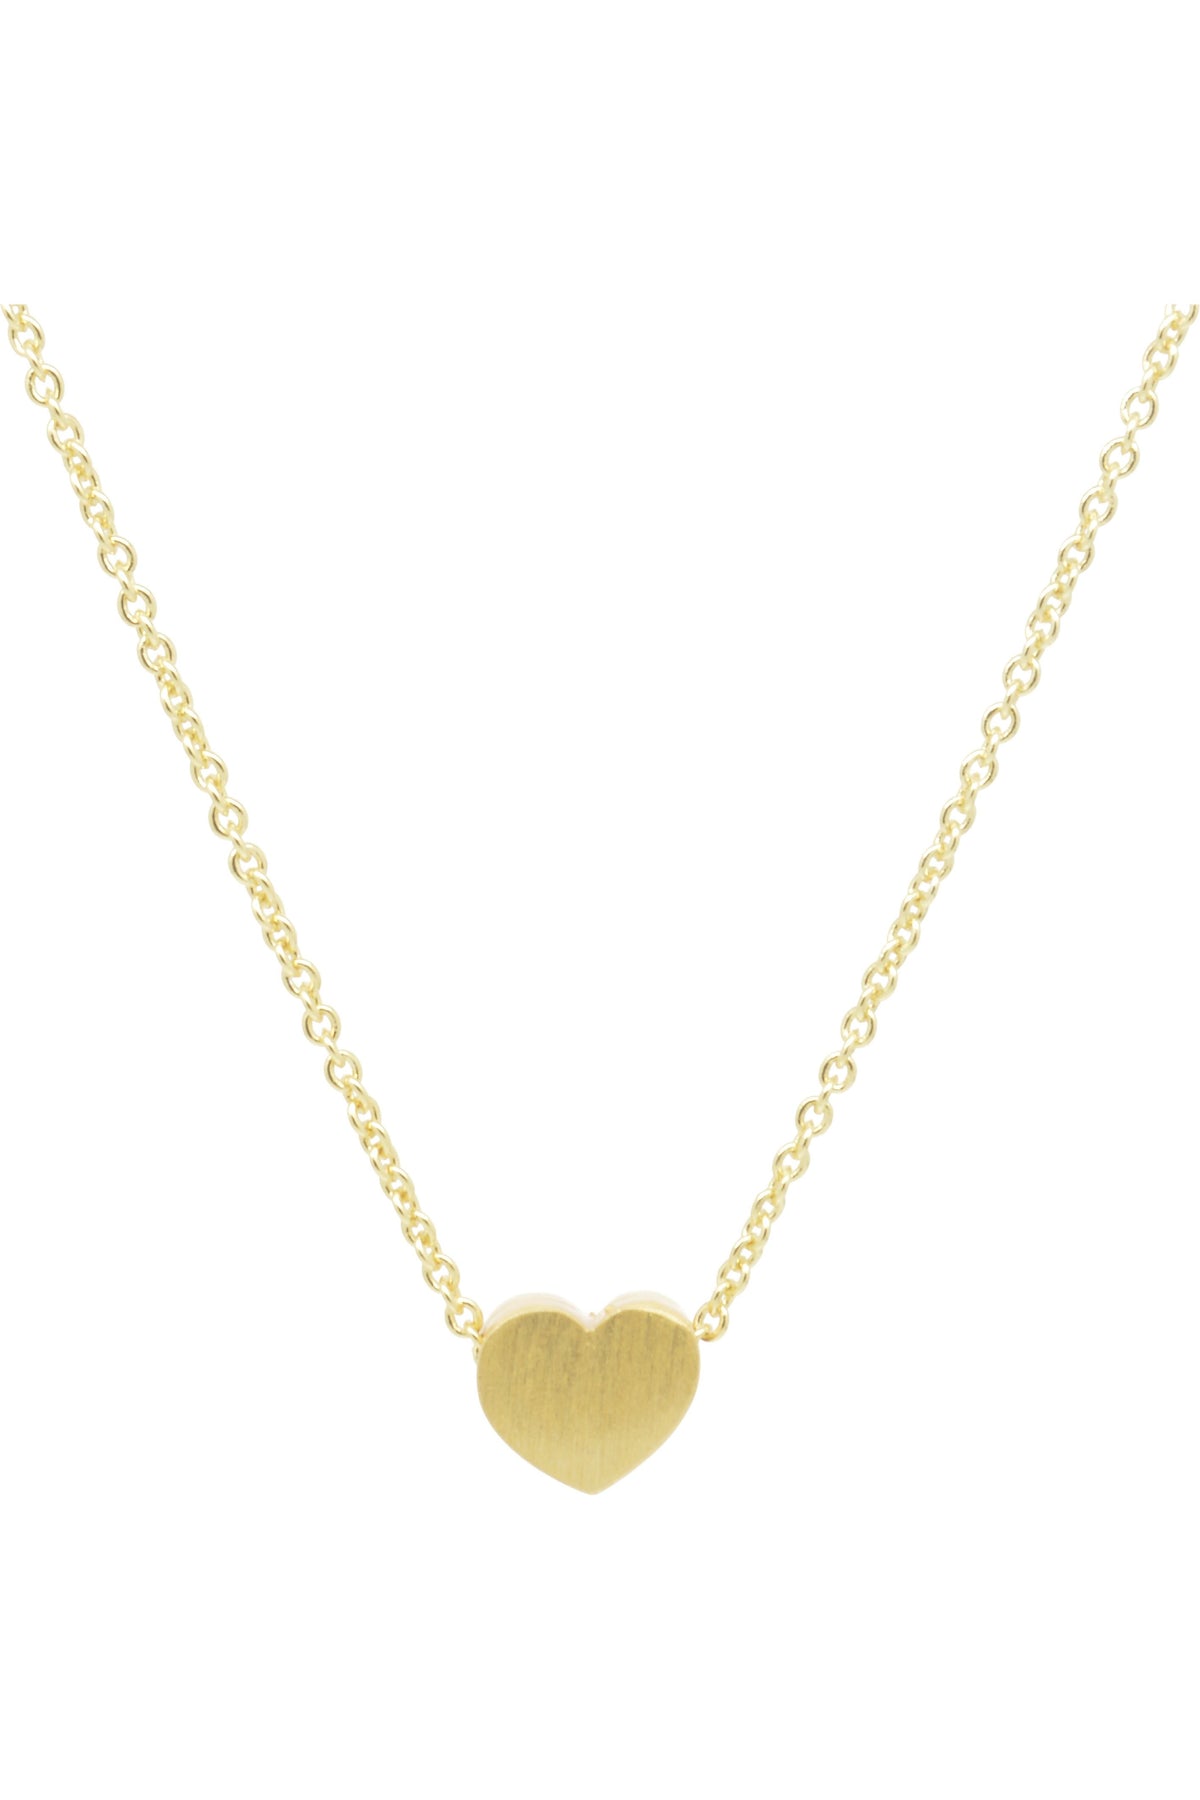 Small Heart Necklace Matt Gold NLK08G